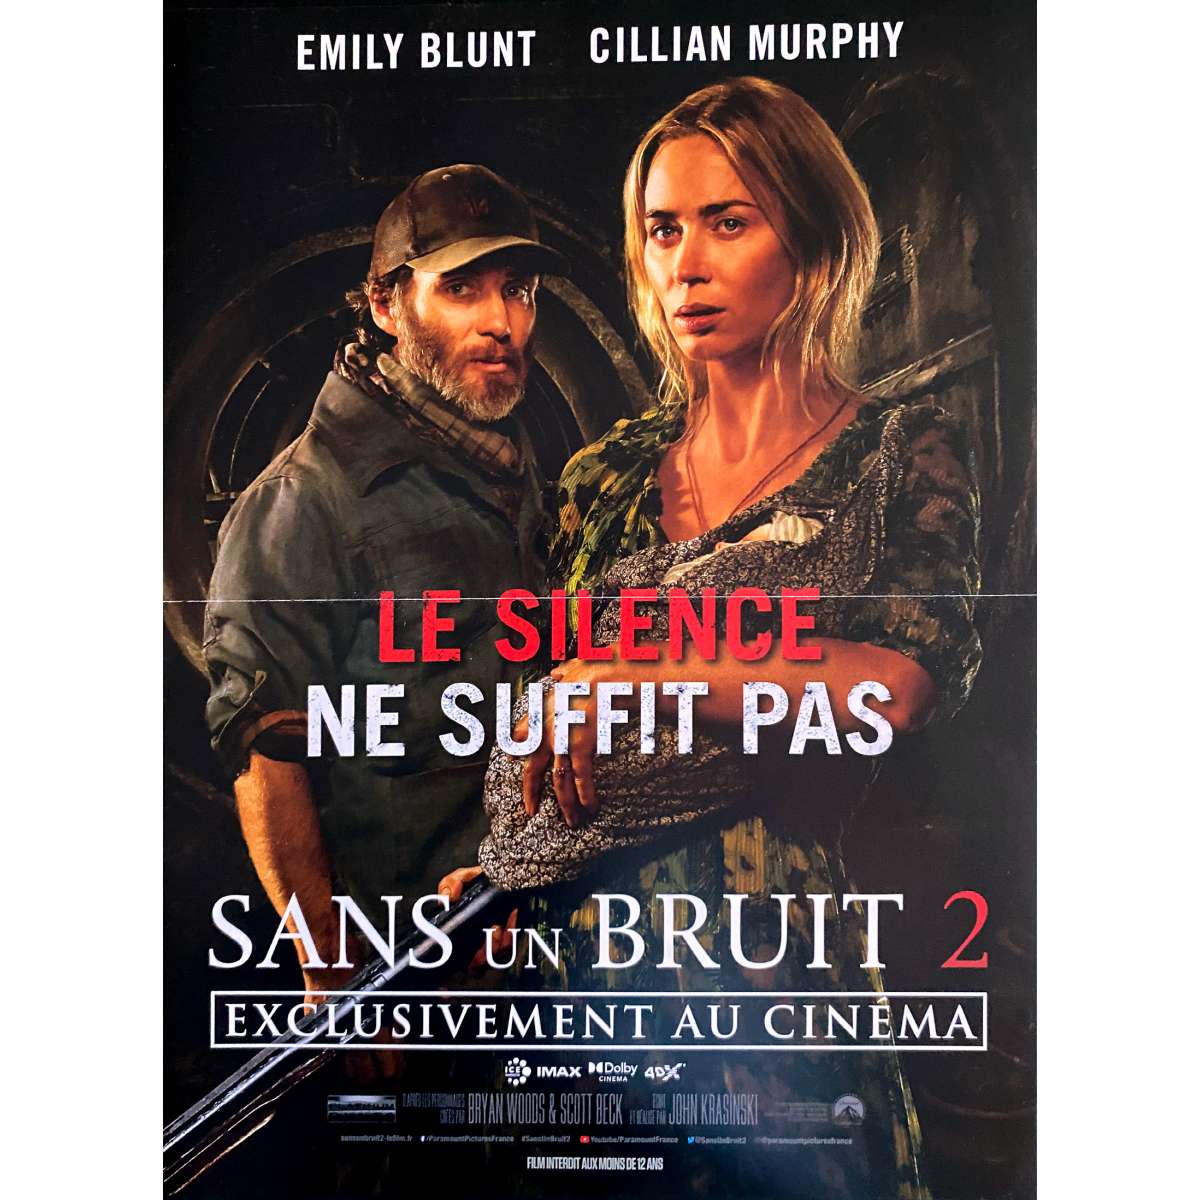 Affiche de cinéma française de SANS UN BRUIT 2 - 40x60 cm.